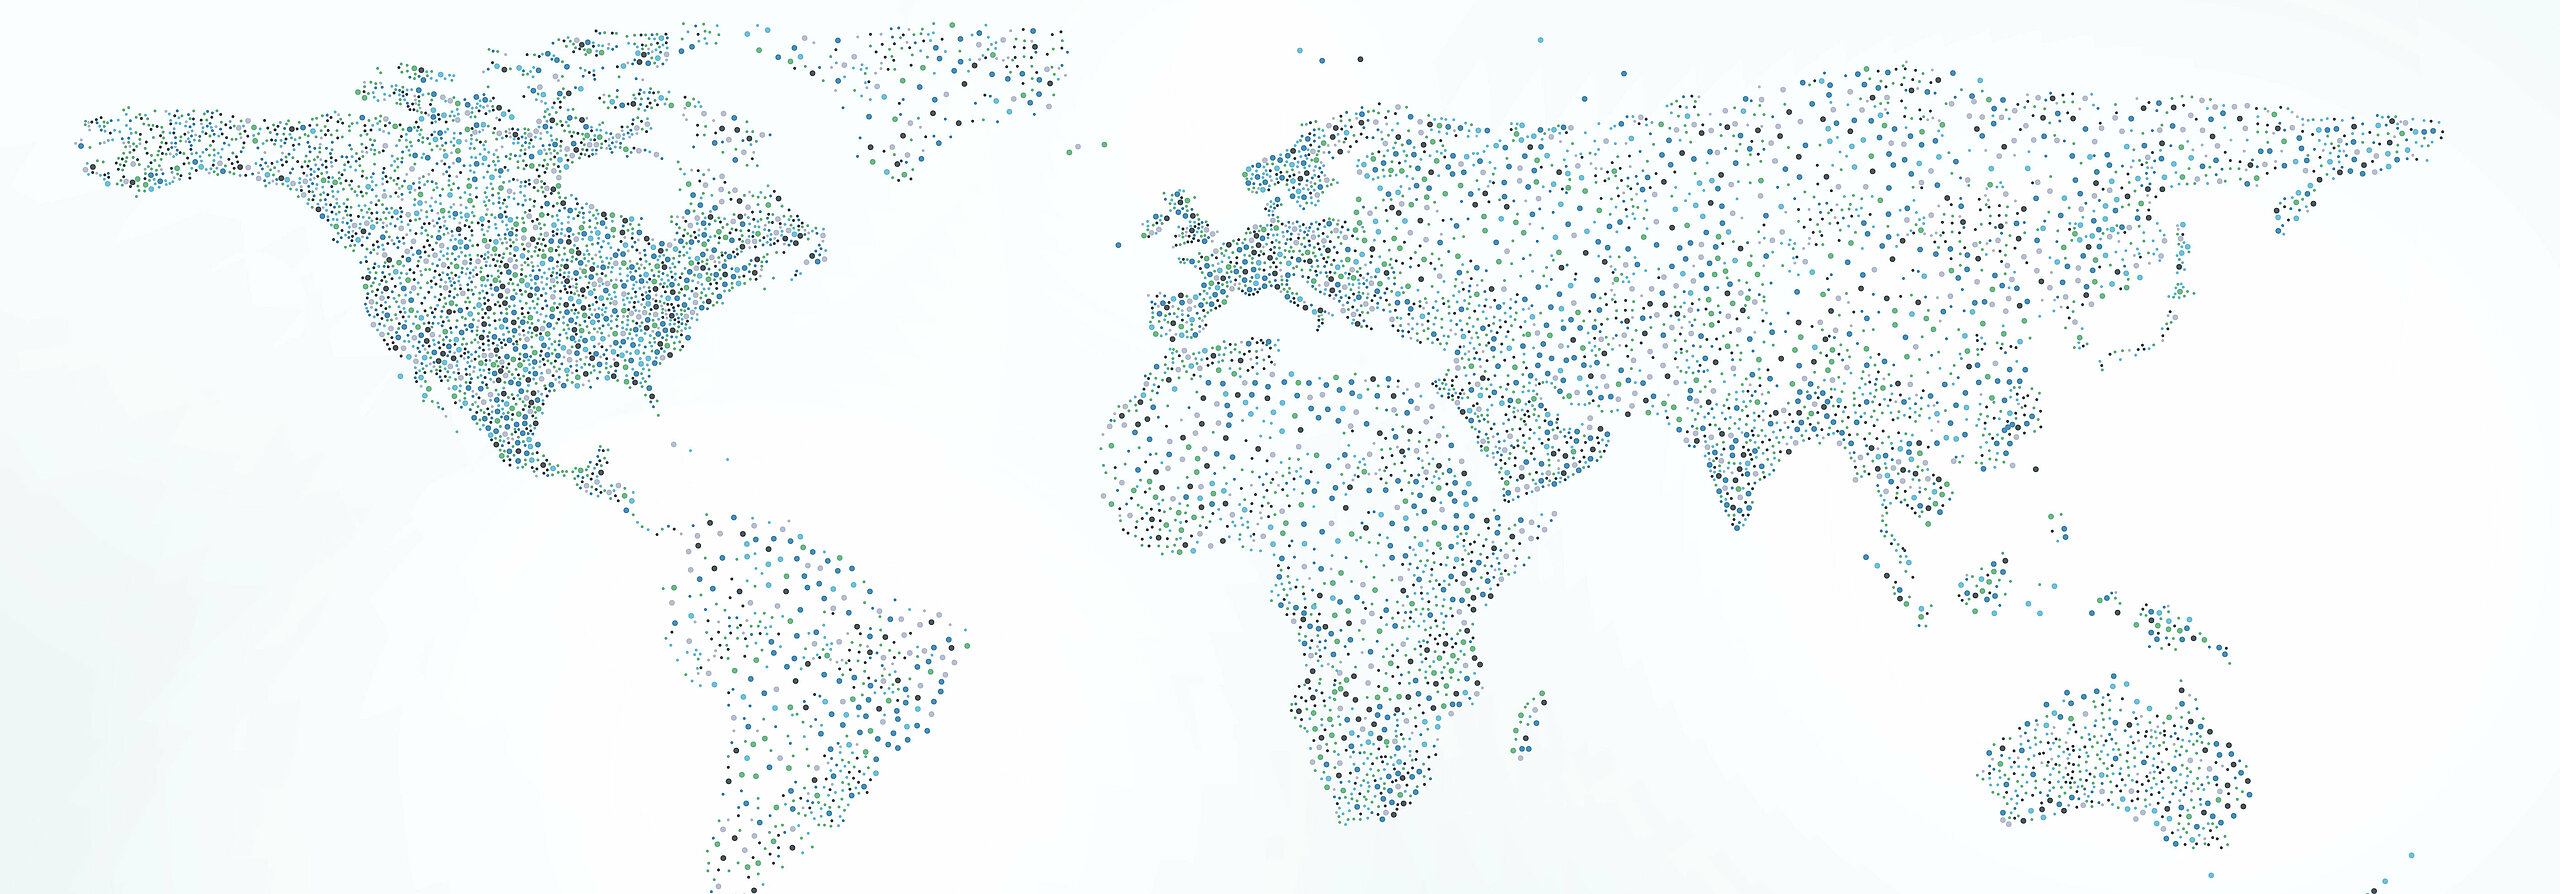 Stilisierte Weltkarte in Blau- und Grüntönen.